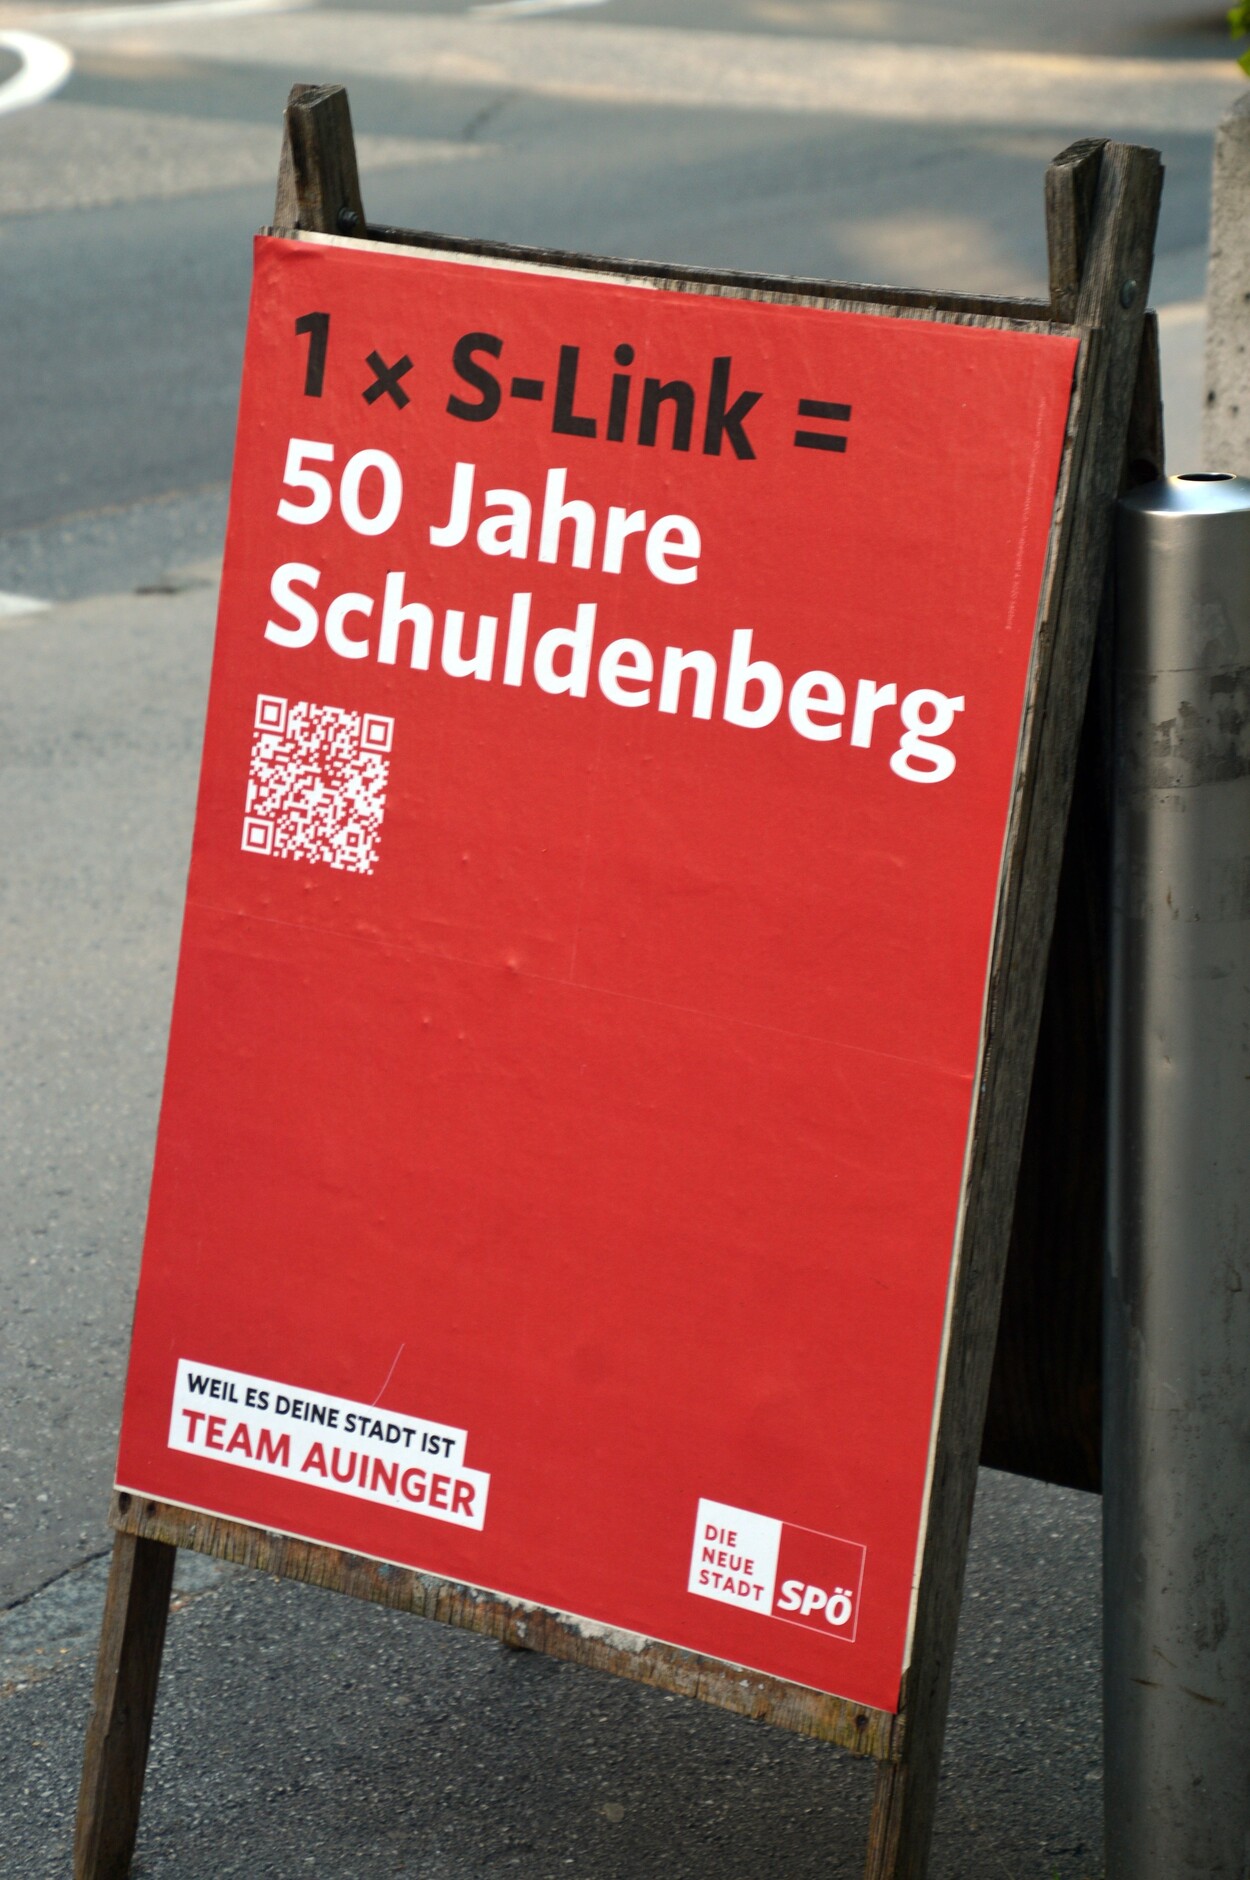 2023-06-26: Stadt SPÖ mit polemischer Panikmache gegen den S-LINK